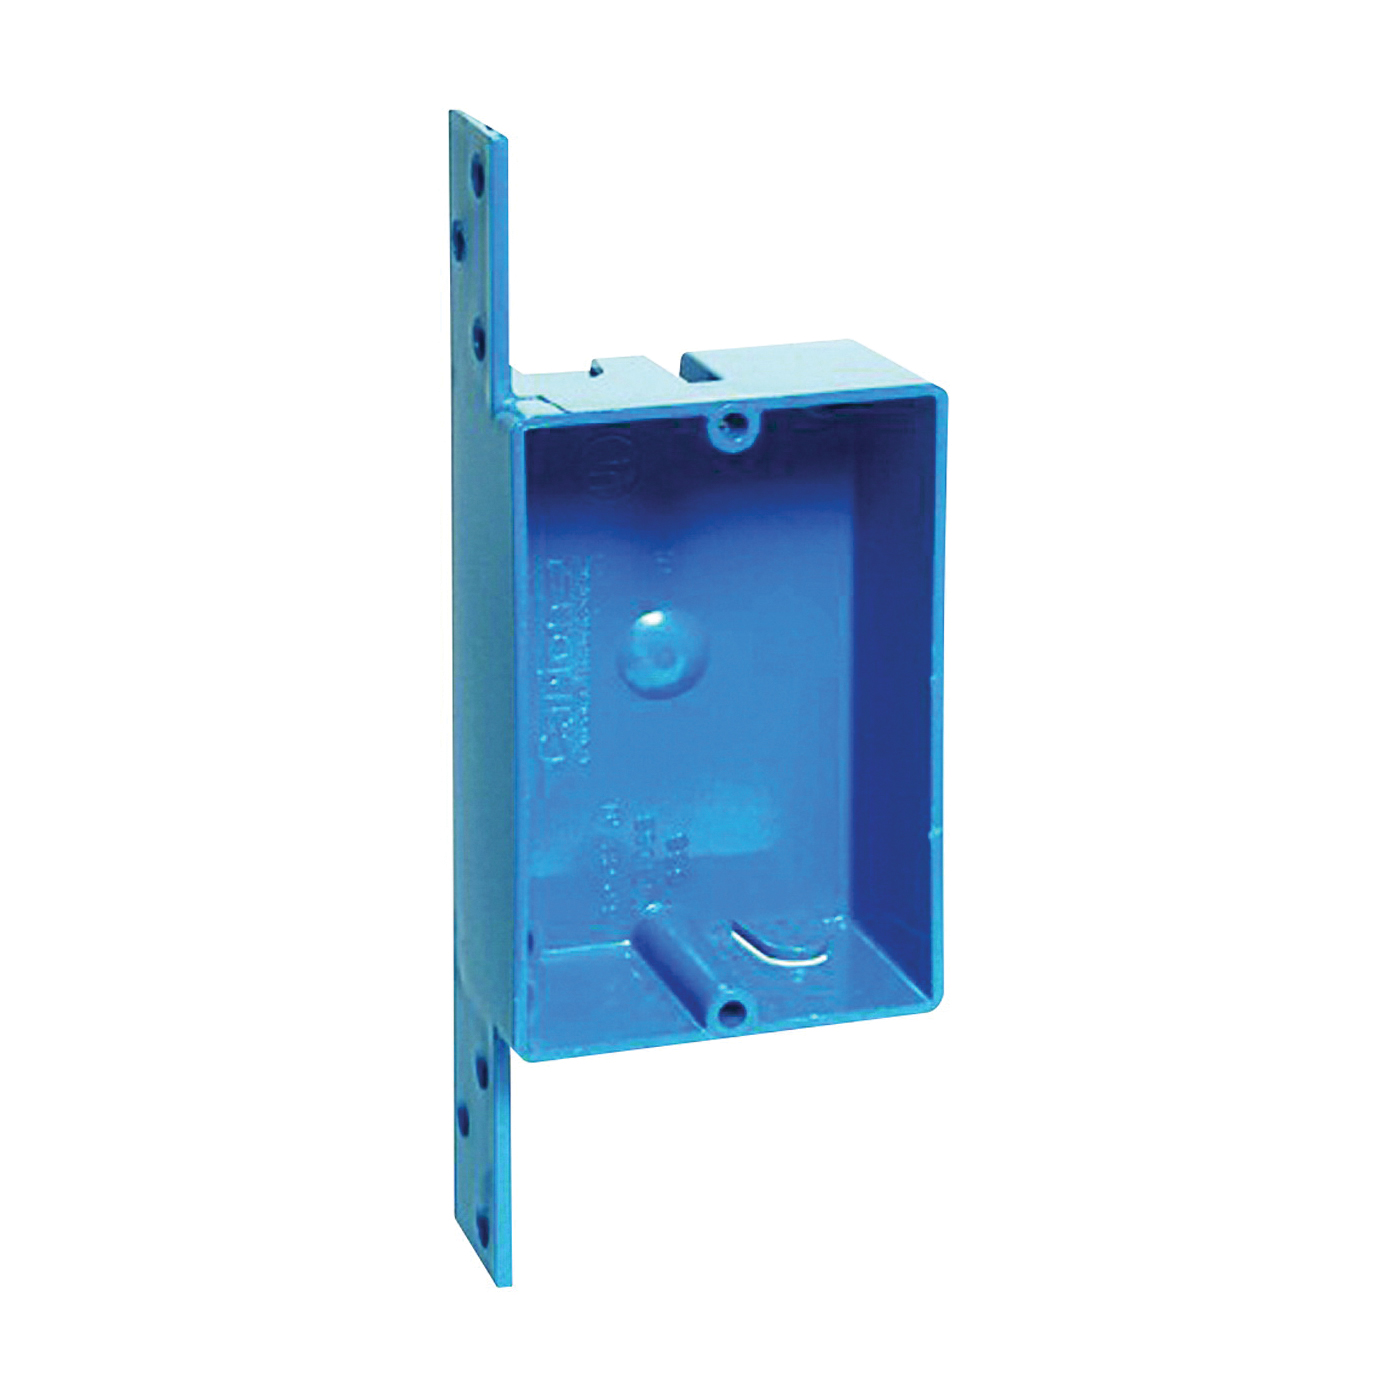 B108B-UPC Outlet Box, 1 -Gang, PVC, Blue, Bracket Mounting